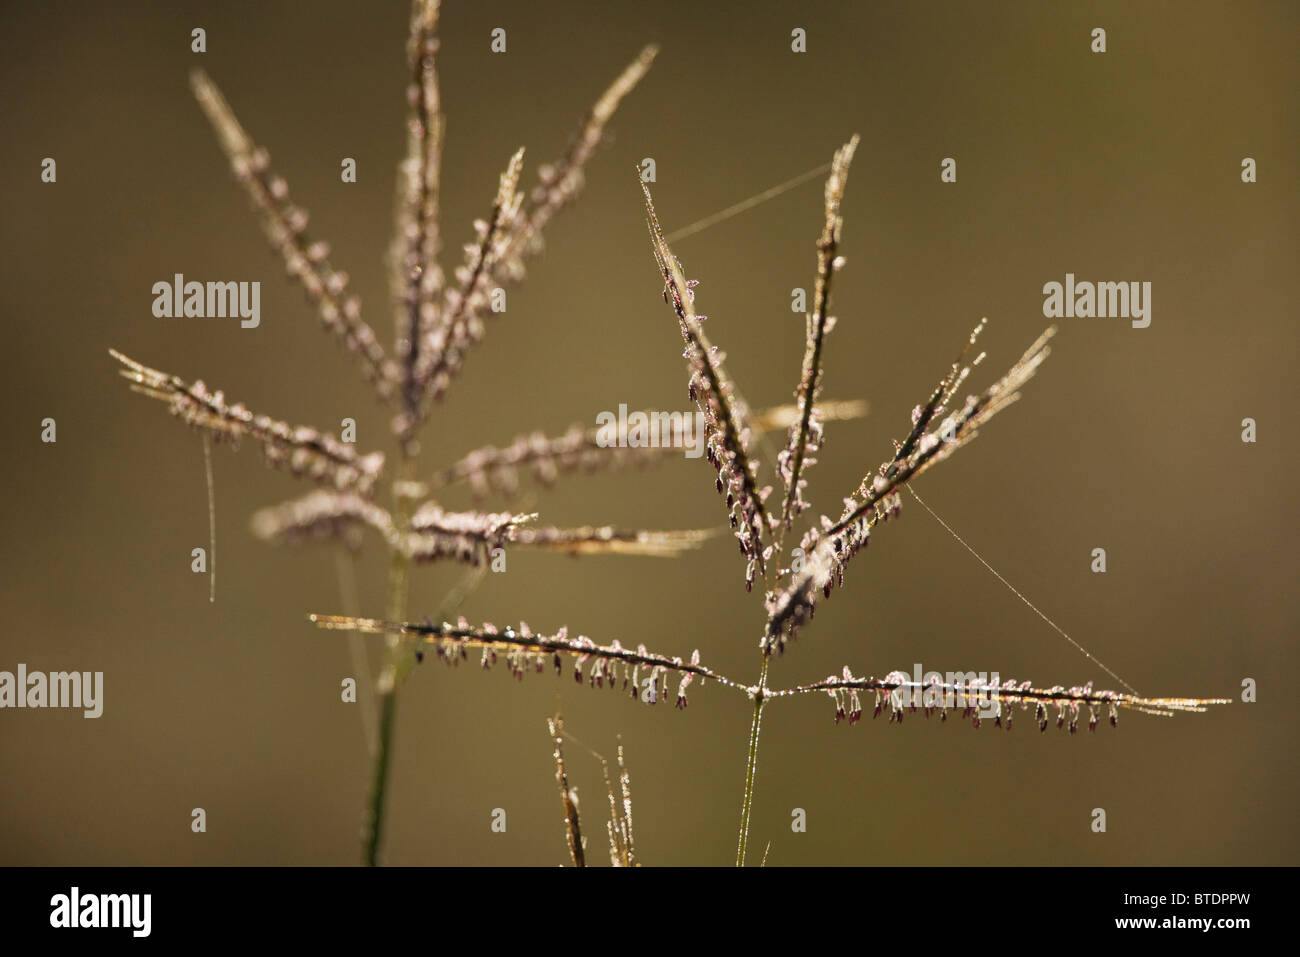 Hinterleuchtete Rasen Samen-Köpfe mit Strängen von Spinnenseide Stockfoto